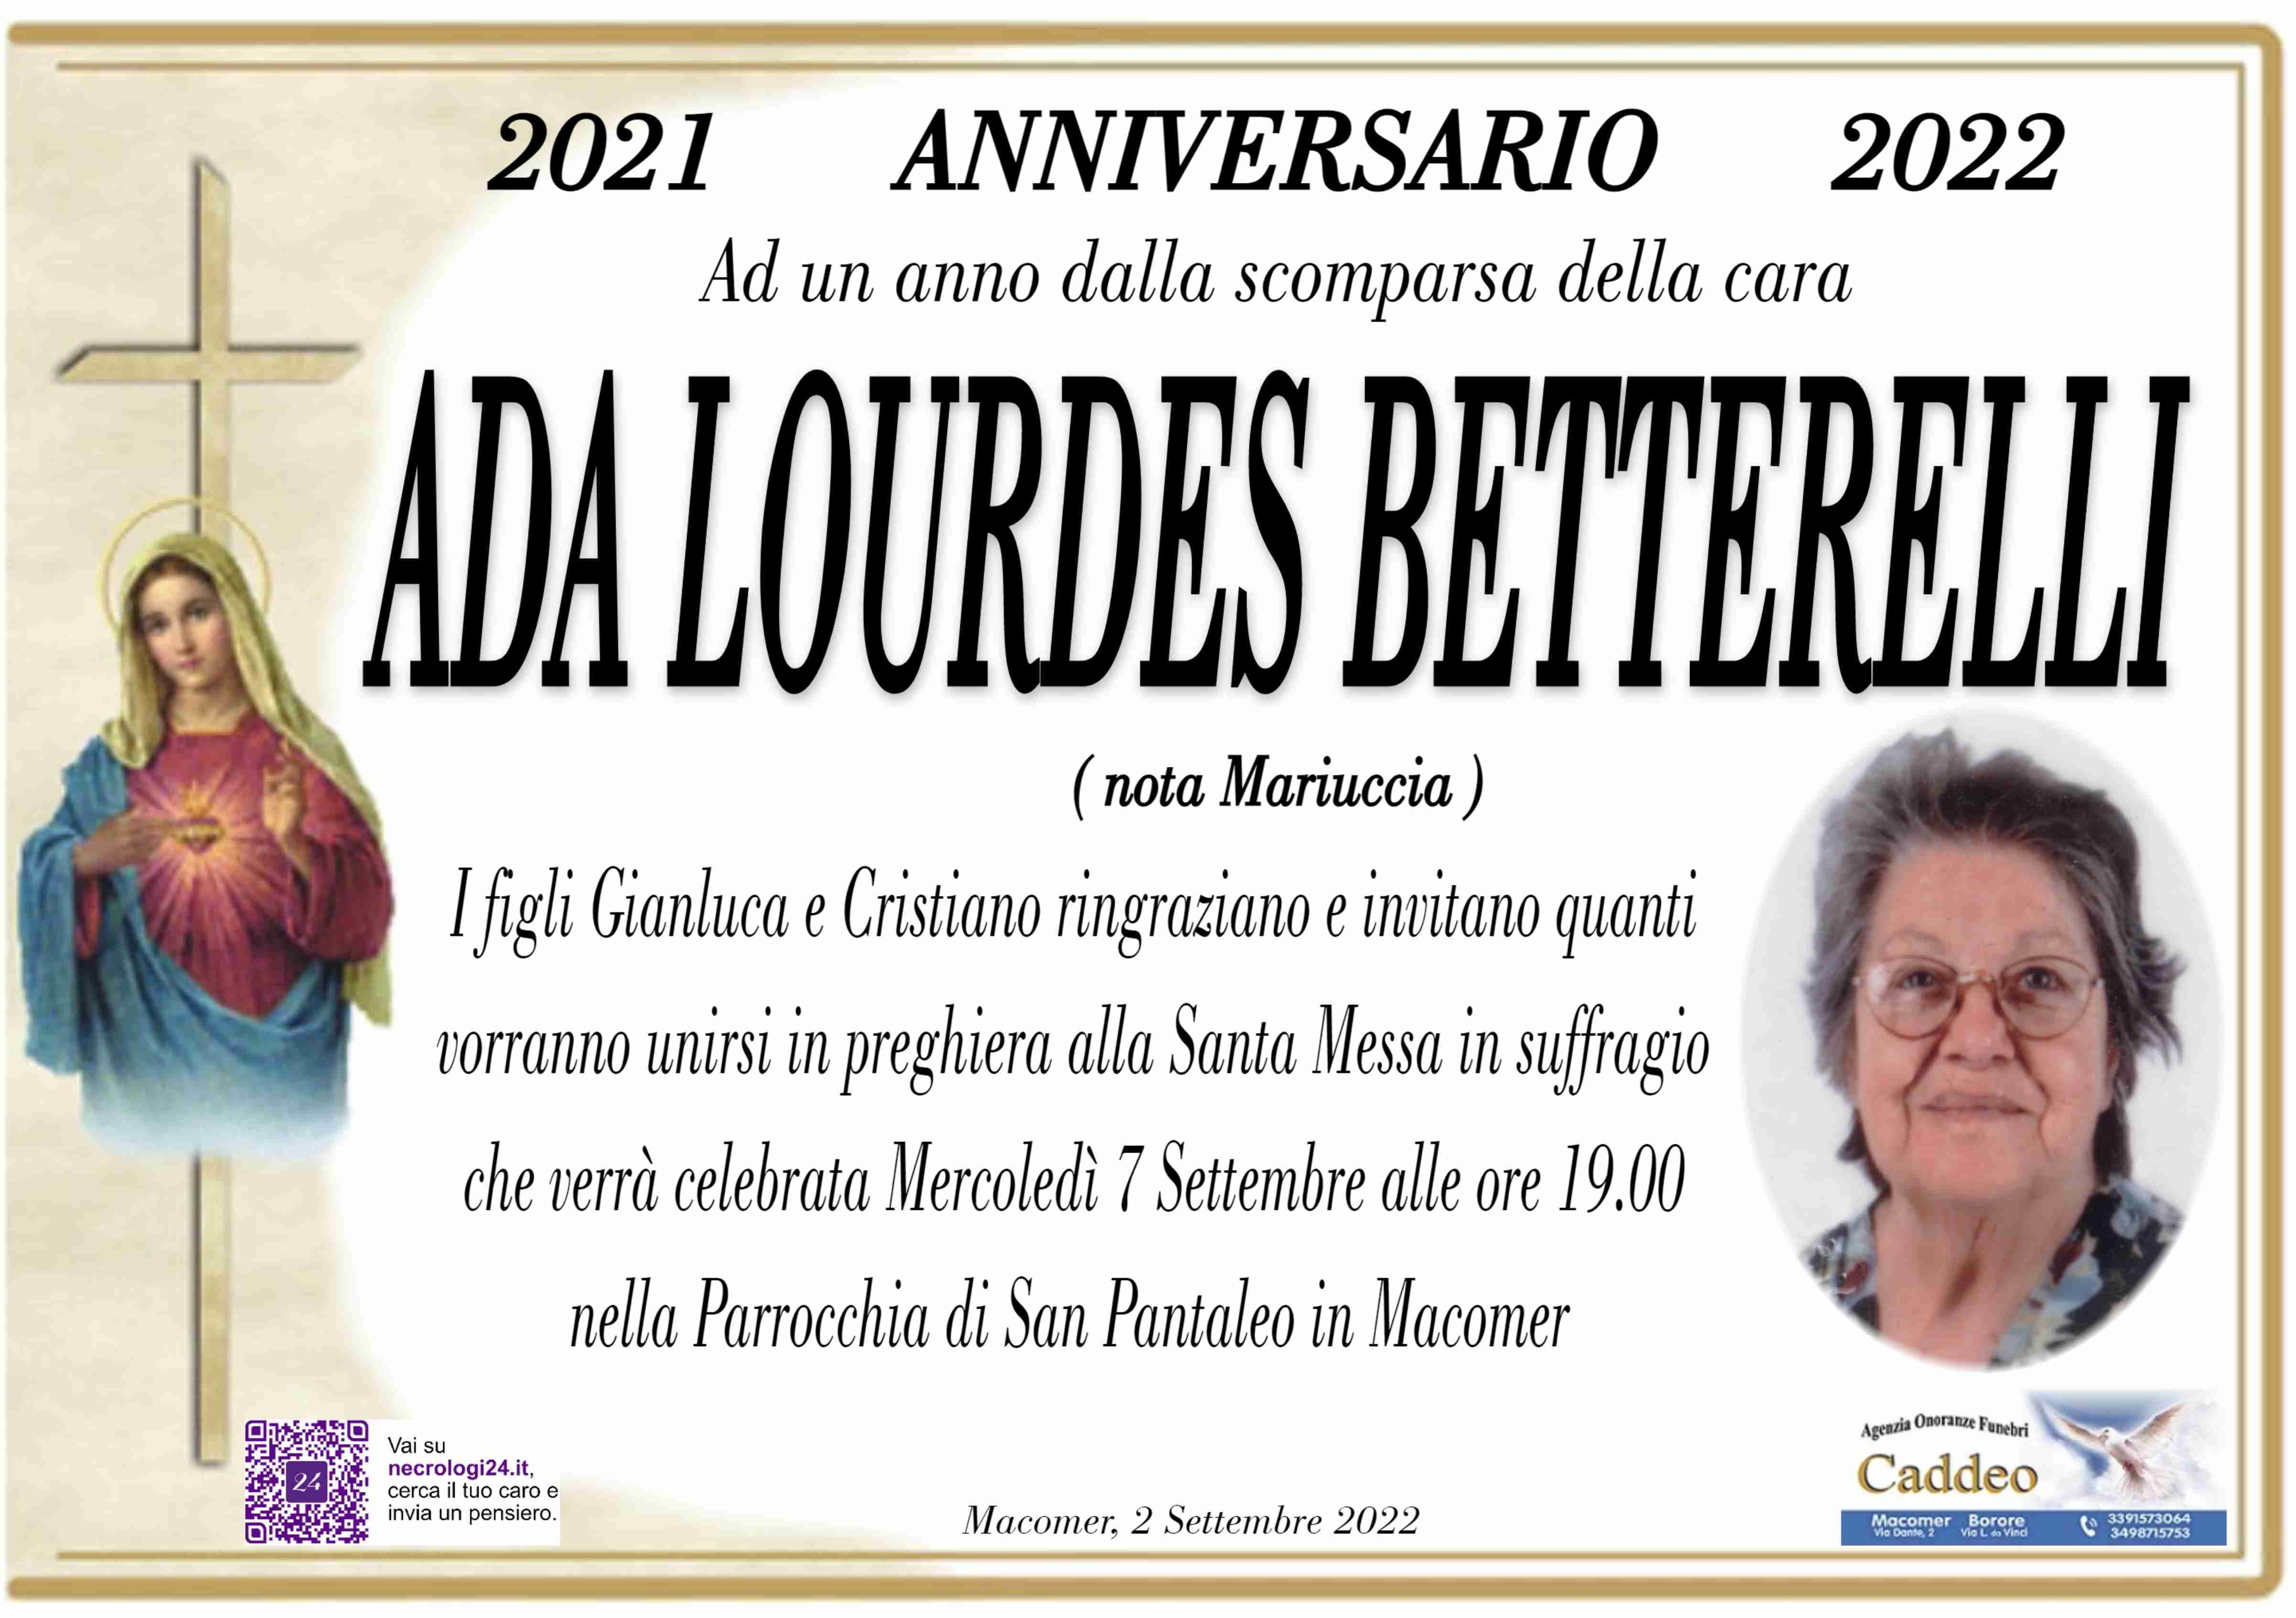 Ada Lourdes Betterelli